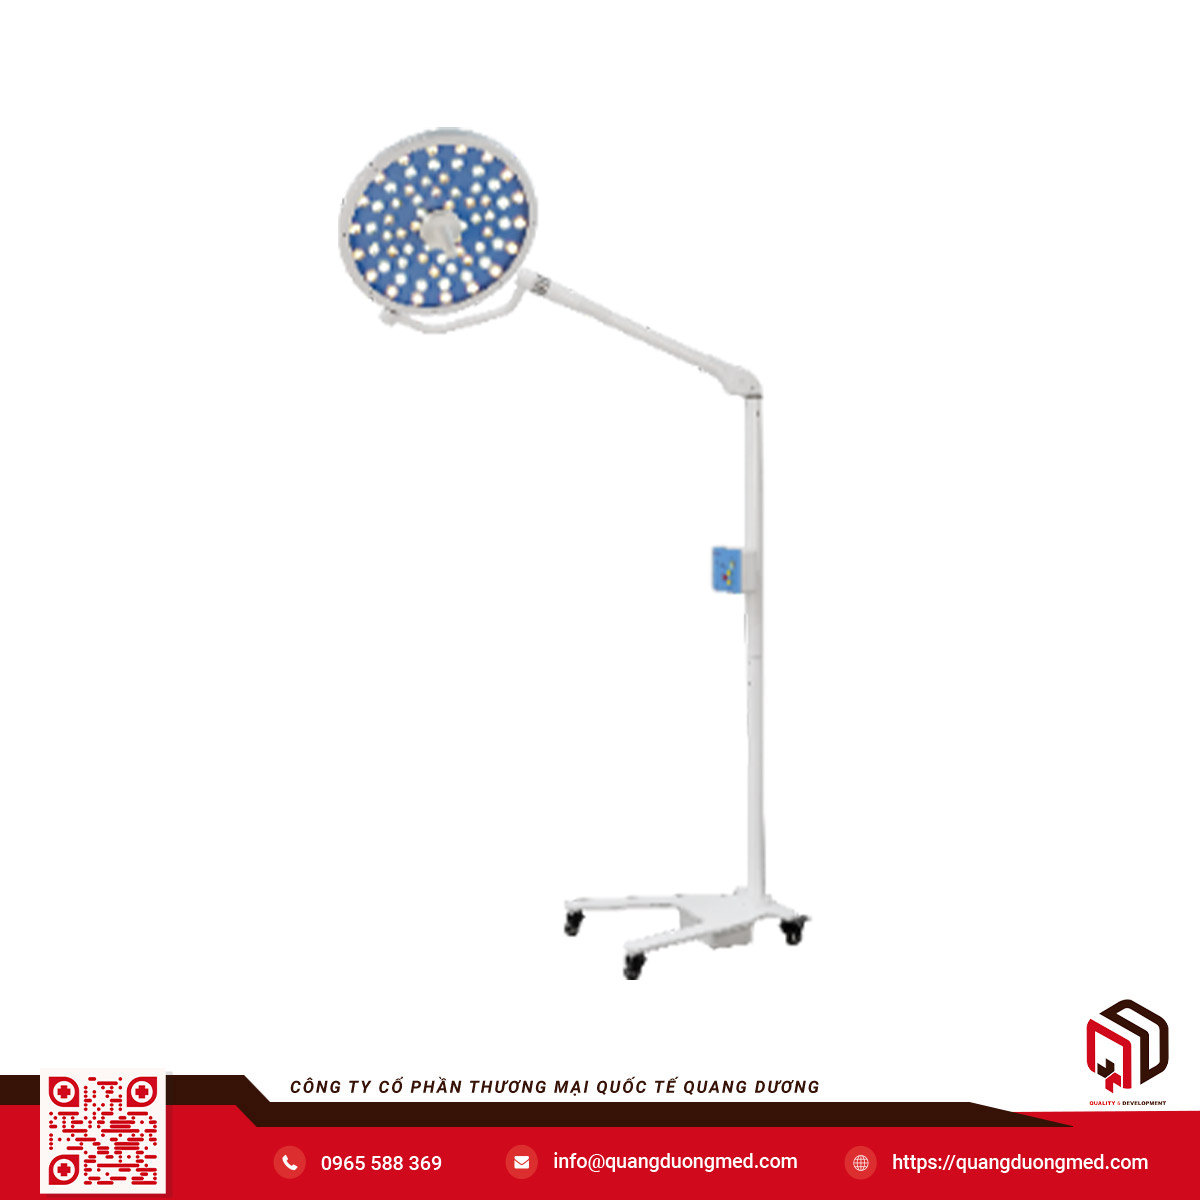 Đèn mổ di động chóa 500 - Model: KYLED500 - Hãng sản xuất: Shandong Qufu Healthyou Medical Technology Co.,Ltd